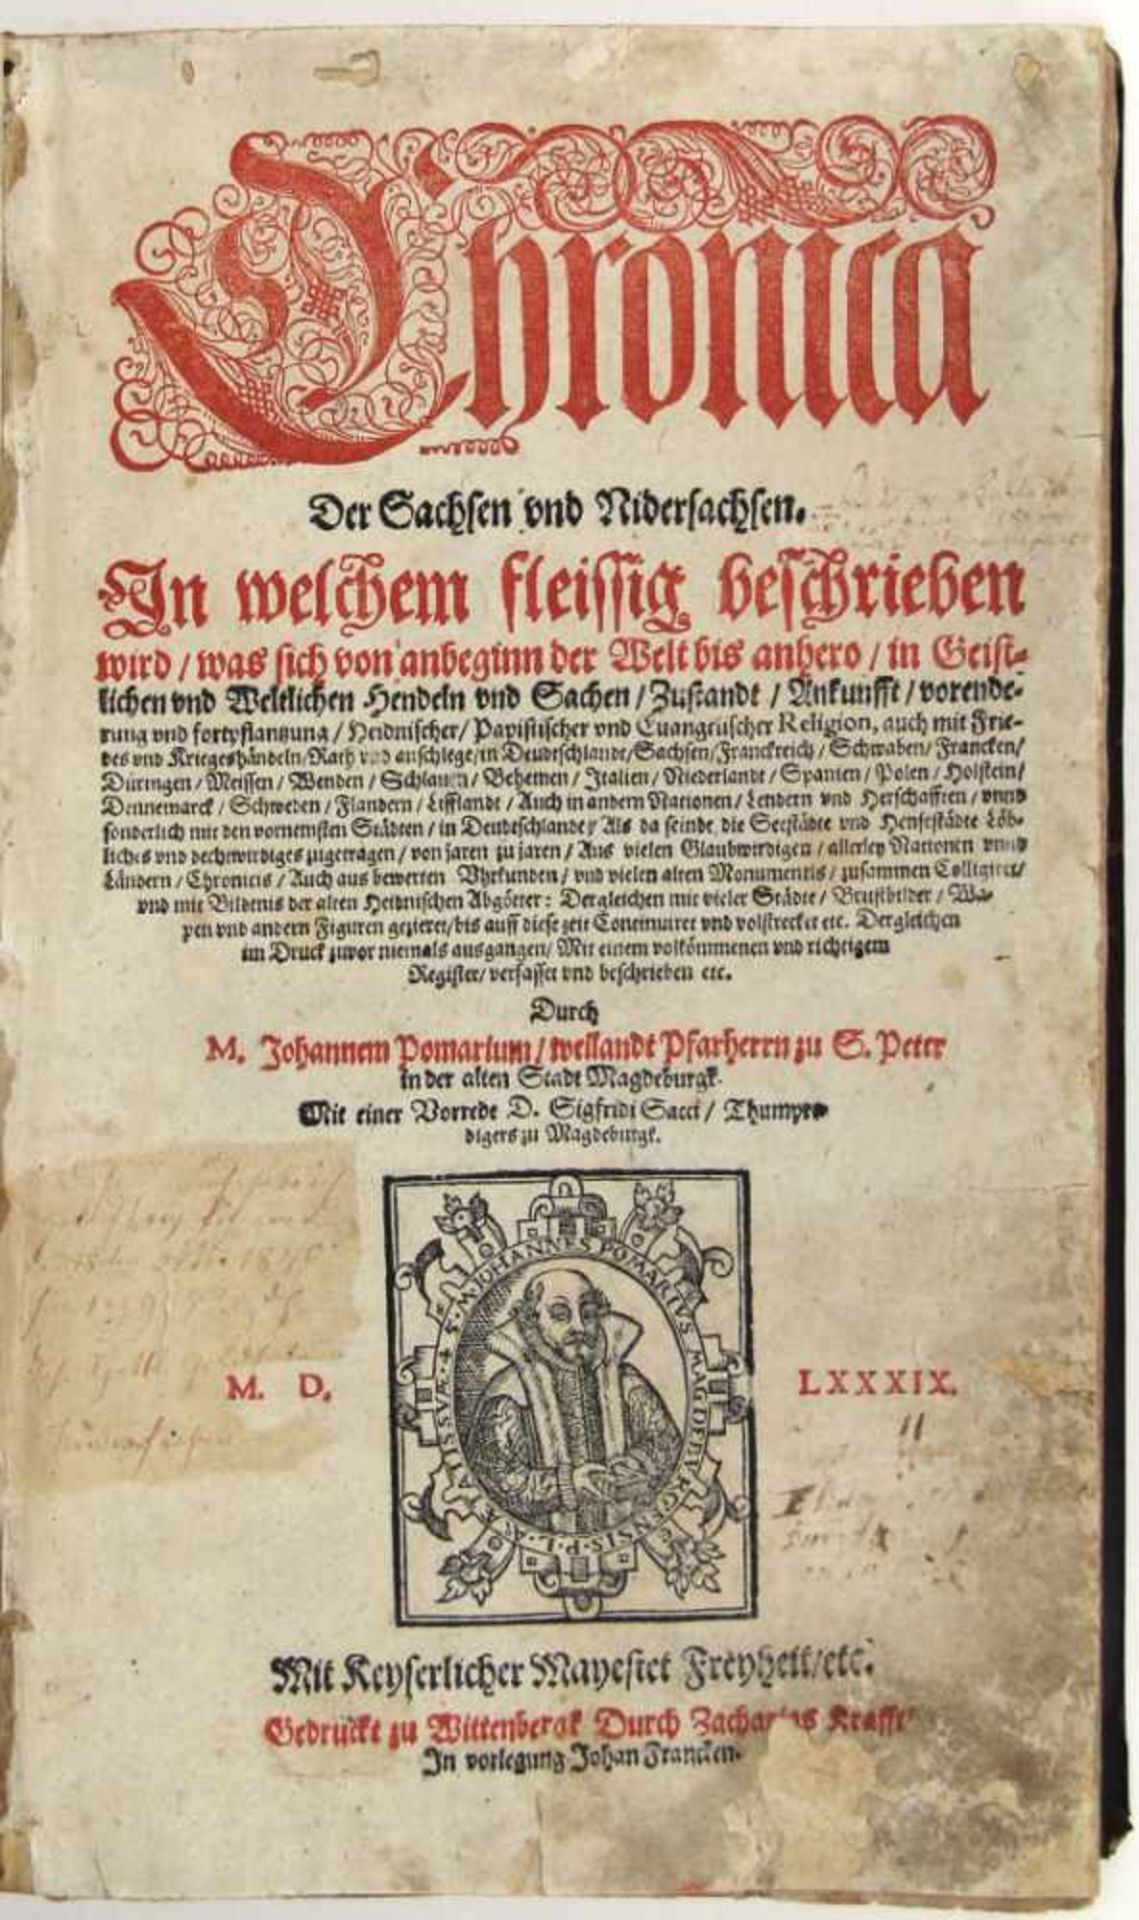 Pomarius, Johannes (d. i. Johann Baumgart) und Conrad Bote: Chronica der Sachsen und Nidersachsen.